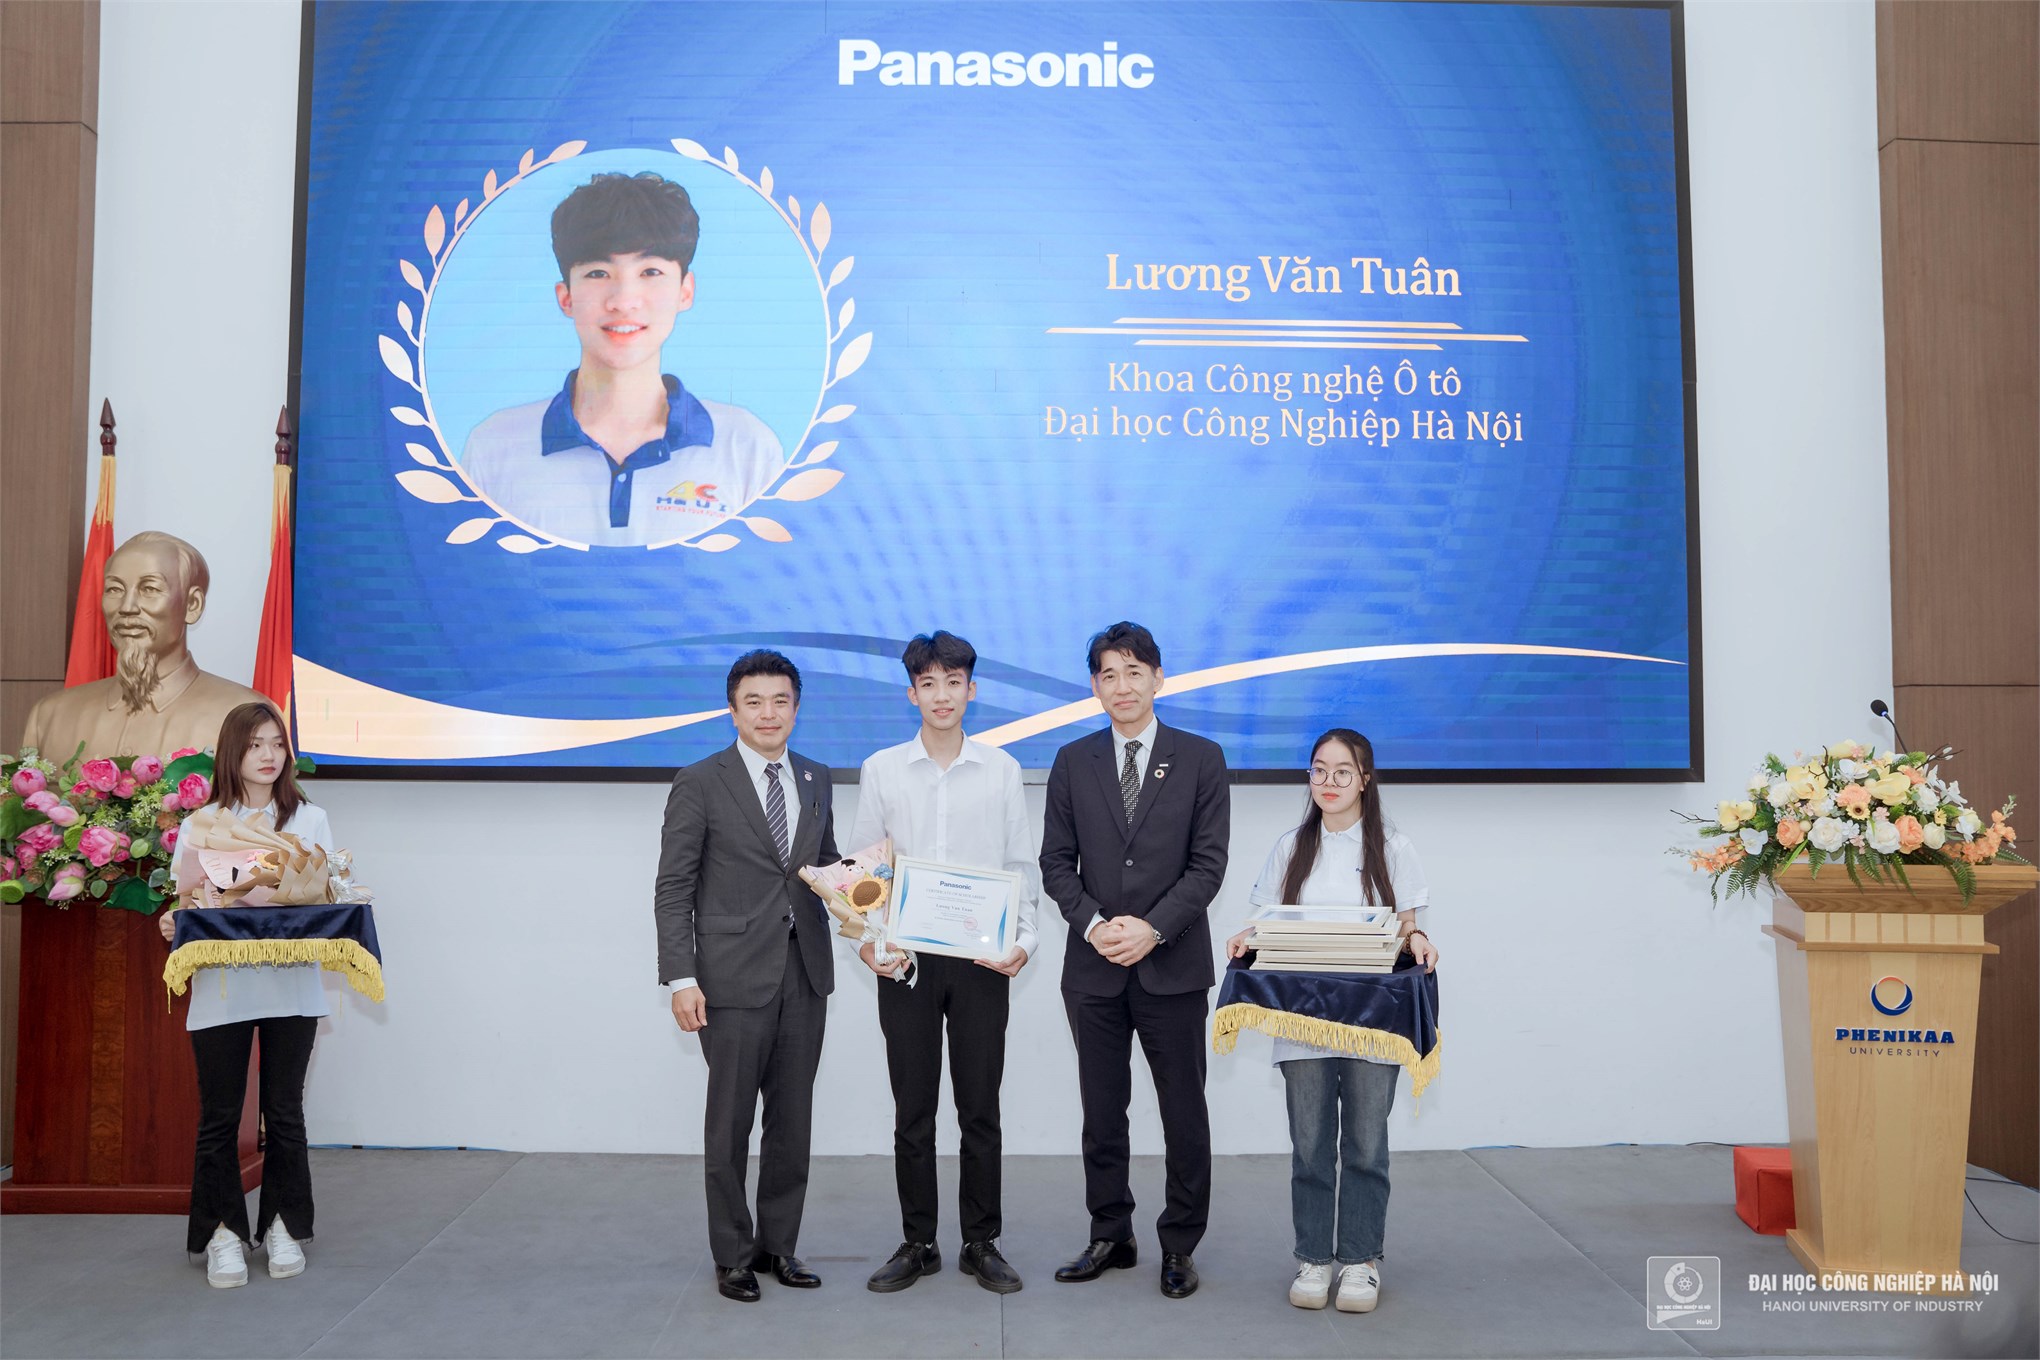 Sinh viên Đại học Công nghiệp Hà Nội xuất sắc nhận học bổng Panasonic